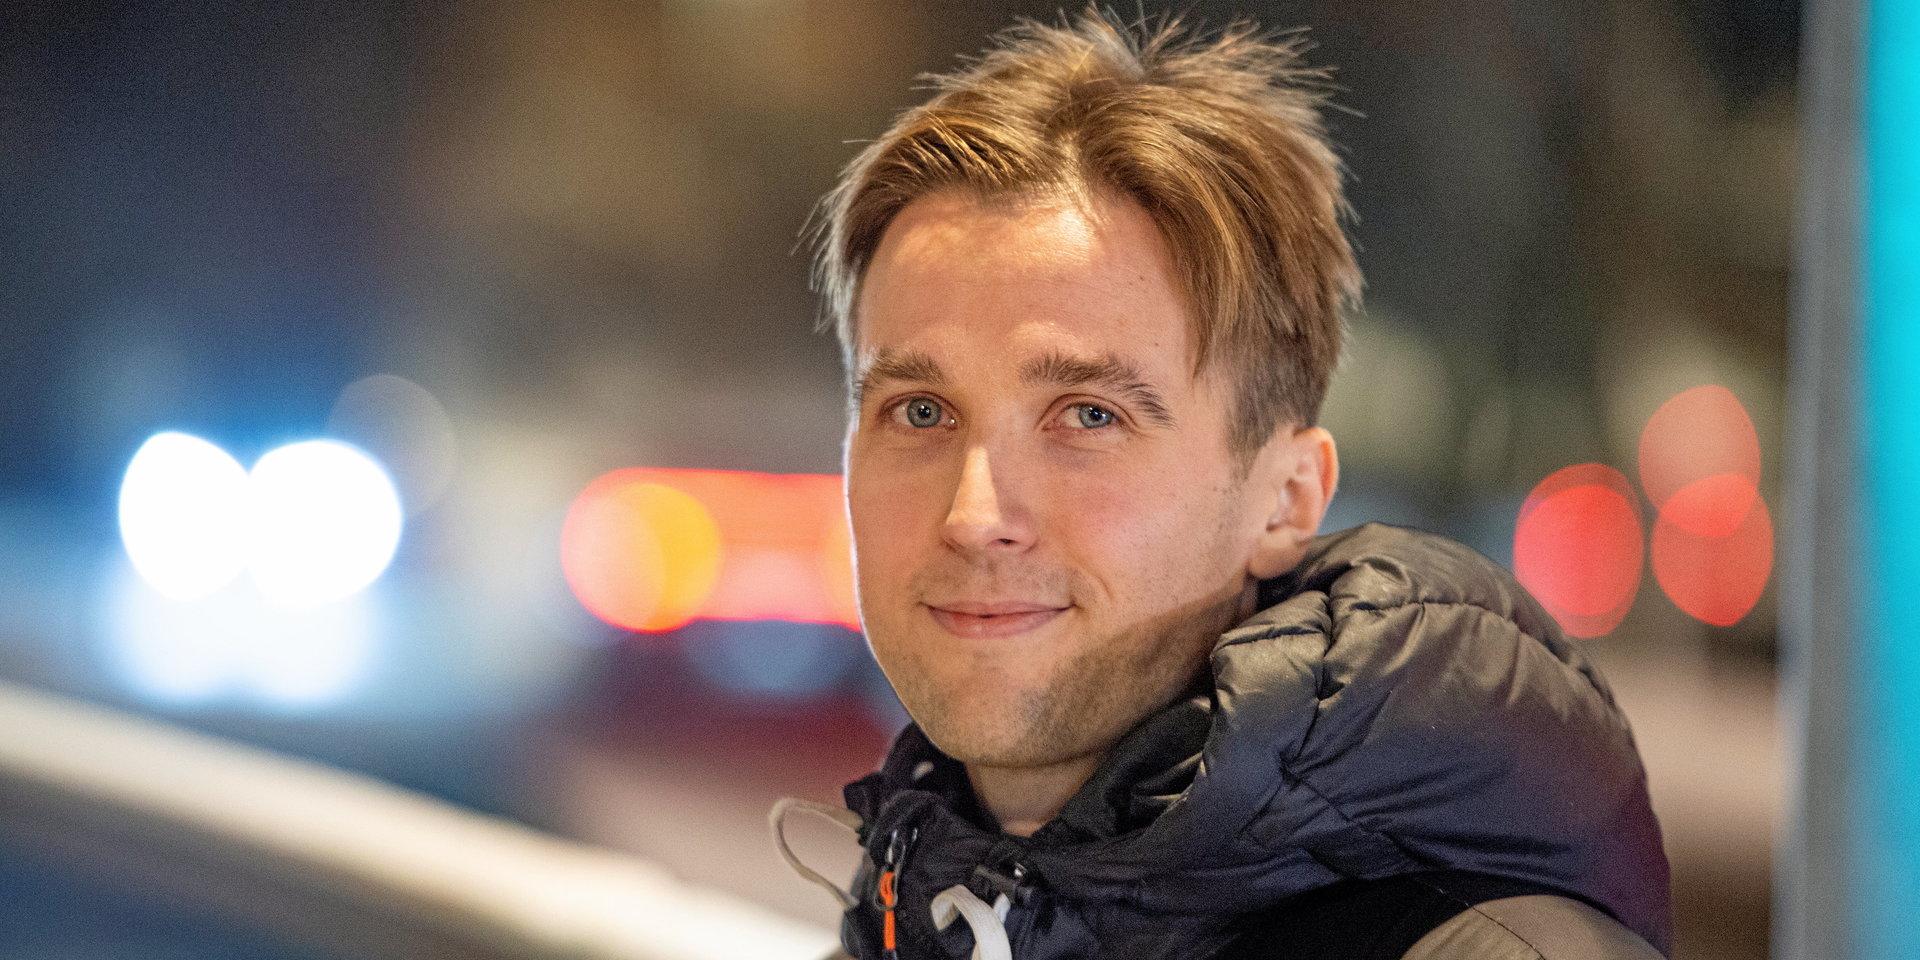 29-årige David Andersson bor i Stadsskogen och studerar till logoped. Skådespeleriet hoppas han kunna hålla på med parallellt i framtiden. 